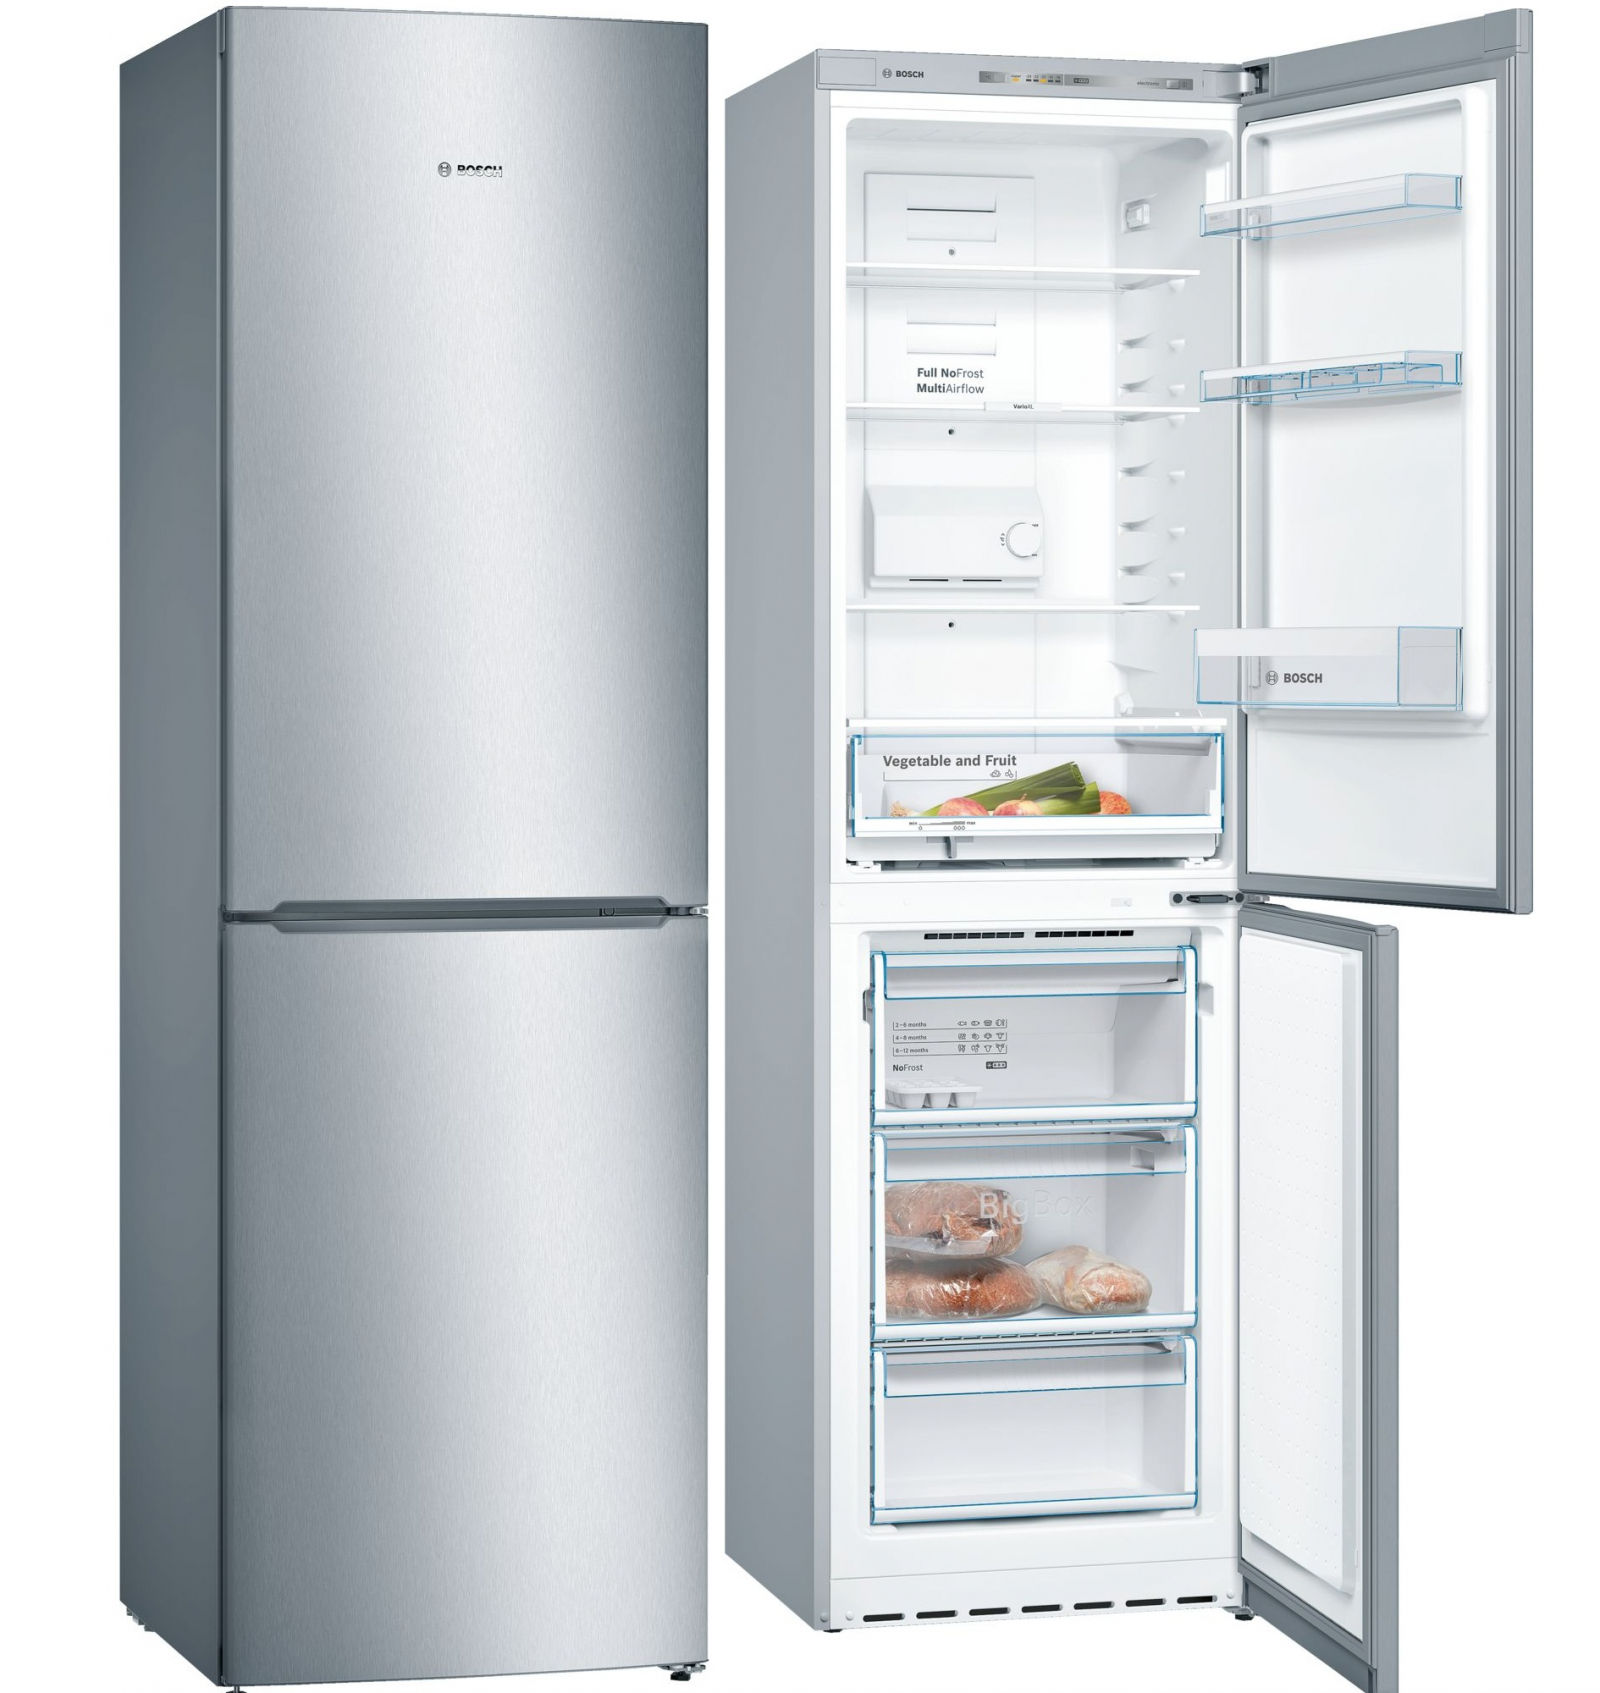 холодильник bosch kgn39nl14r, купить в Красноярске холодильник bosch kgn39nl14r,  купить в Красноярске дешево холодильник bosch kgn39nl14r, купить в Красноярске минимальной цене холодильник bosch kgn39nl14r